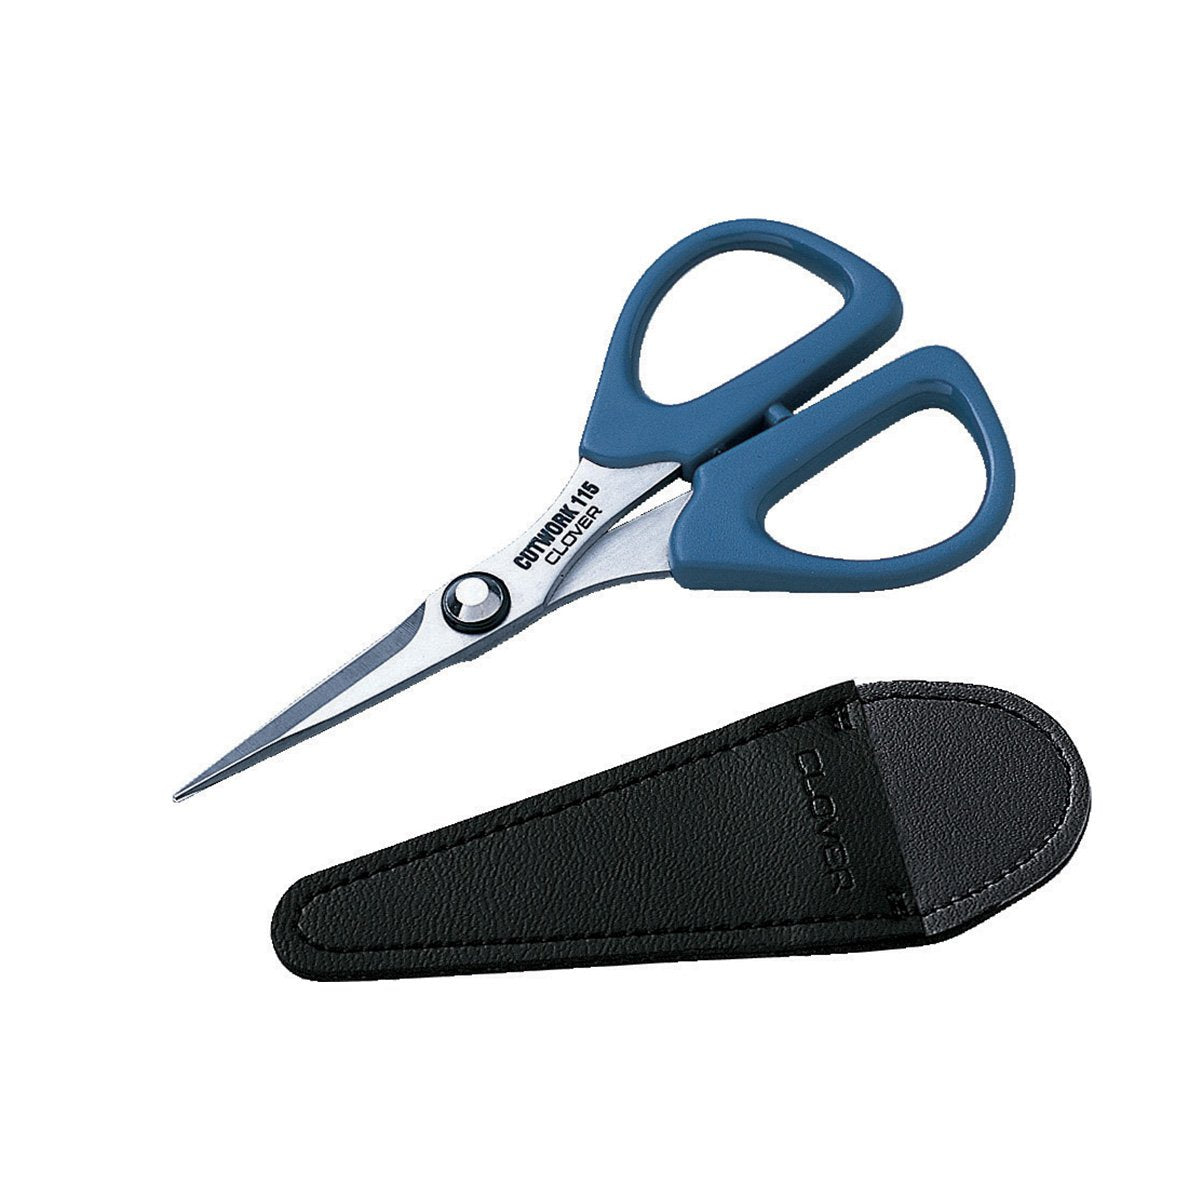 Japanese Sewing & Patchwork Scissors, 130mm, Molybdenum Vanadium